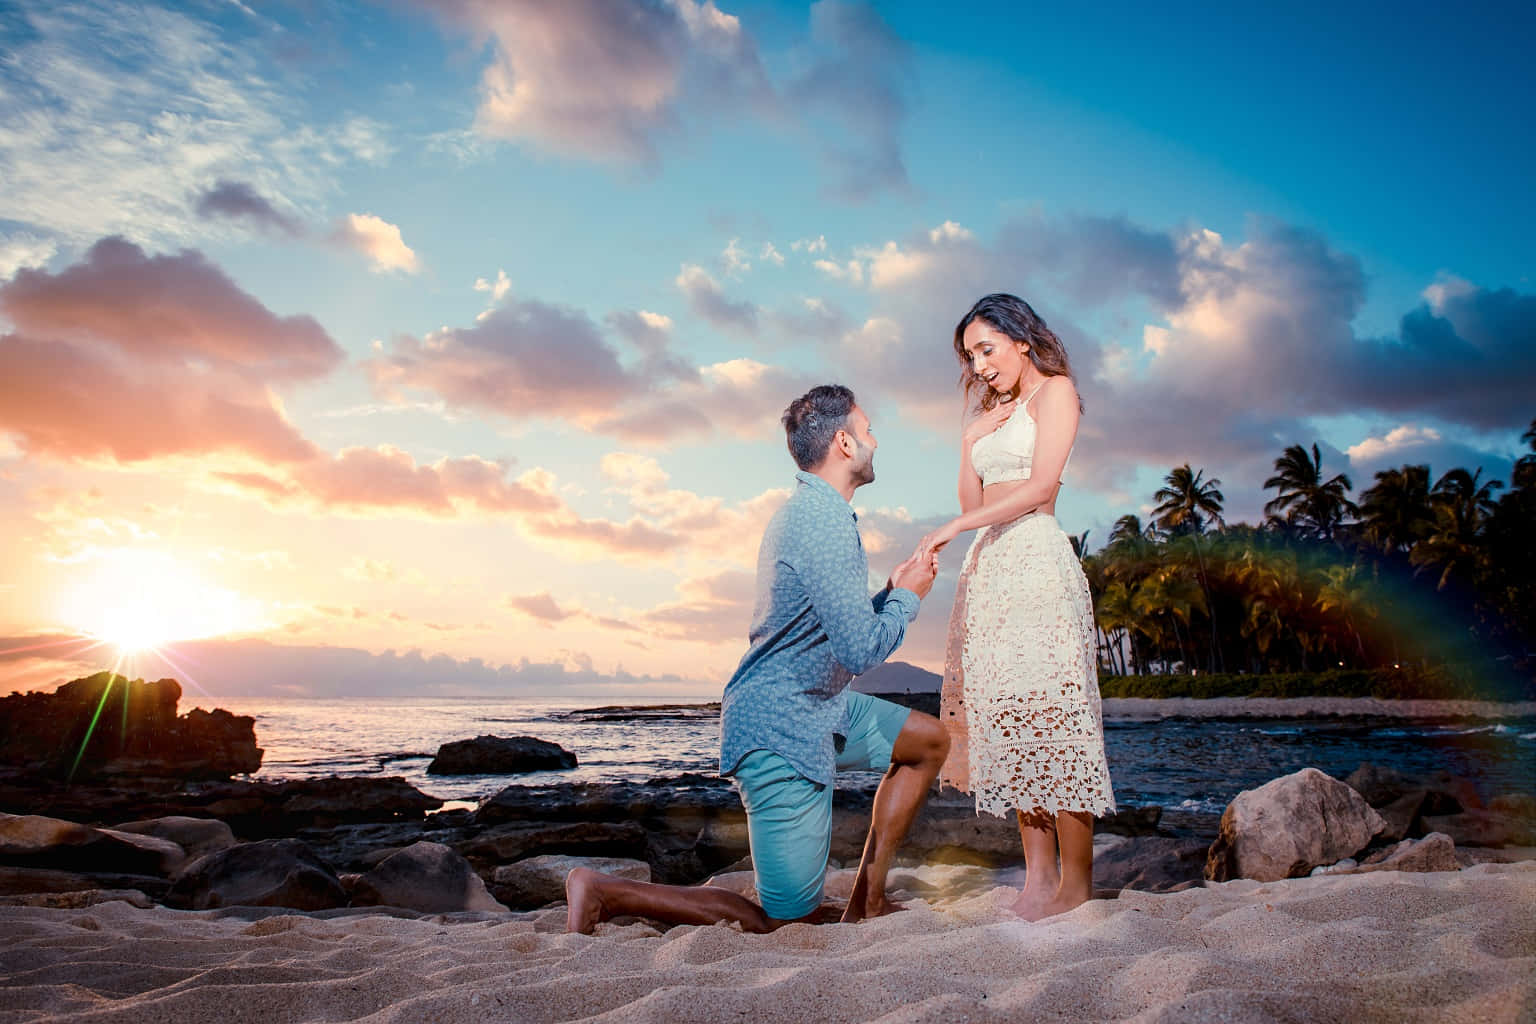 Coppiasulla Spiaggia - Immagine Della Proposta Di Matrimonio